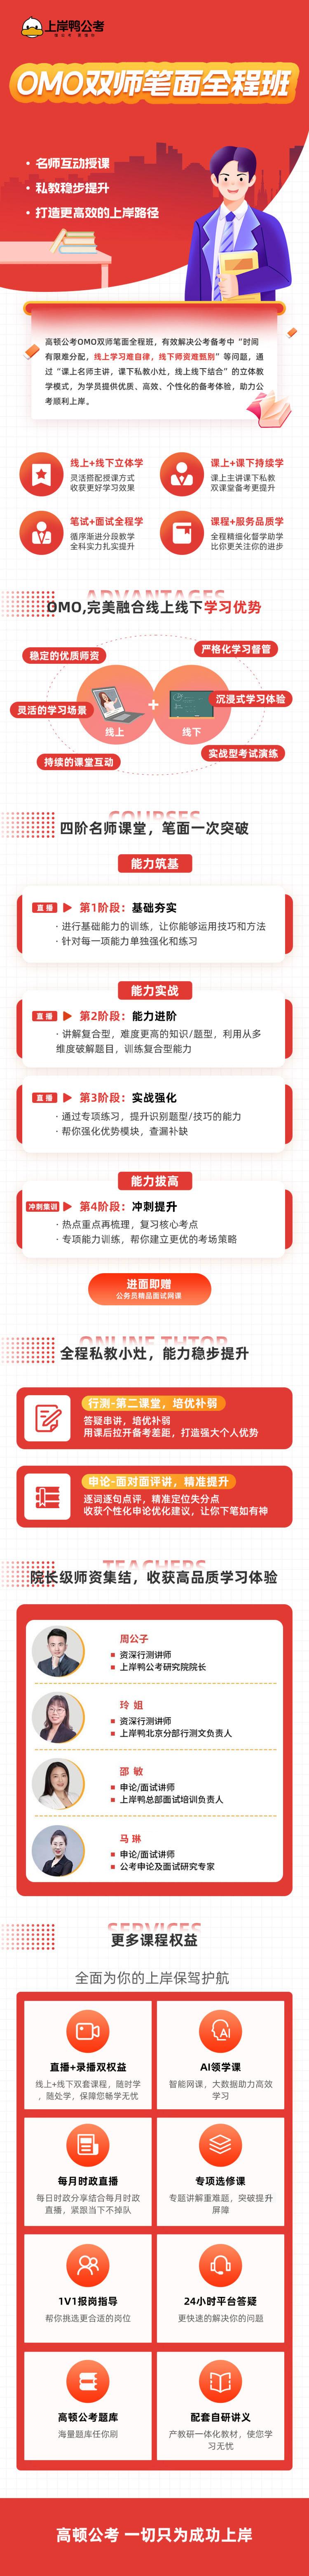 https://simg01.gaodunwangxiao.com/uploadfiles/product-center/202402/28/b5b3c_20240228165407.jpeg